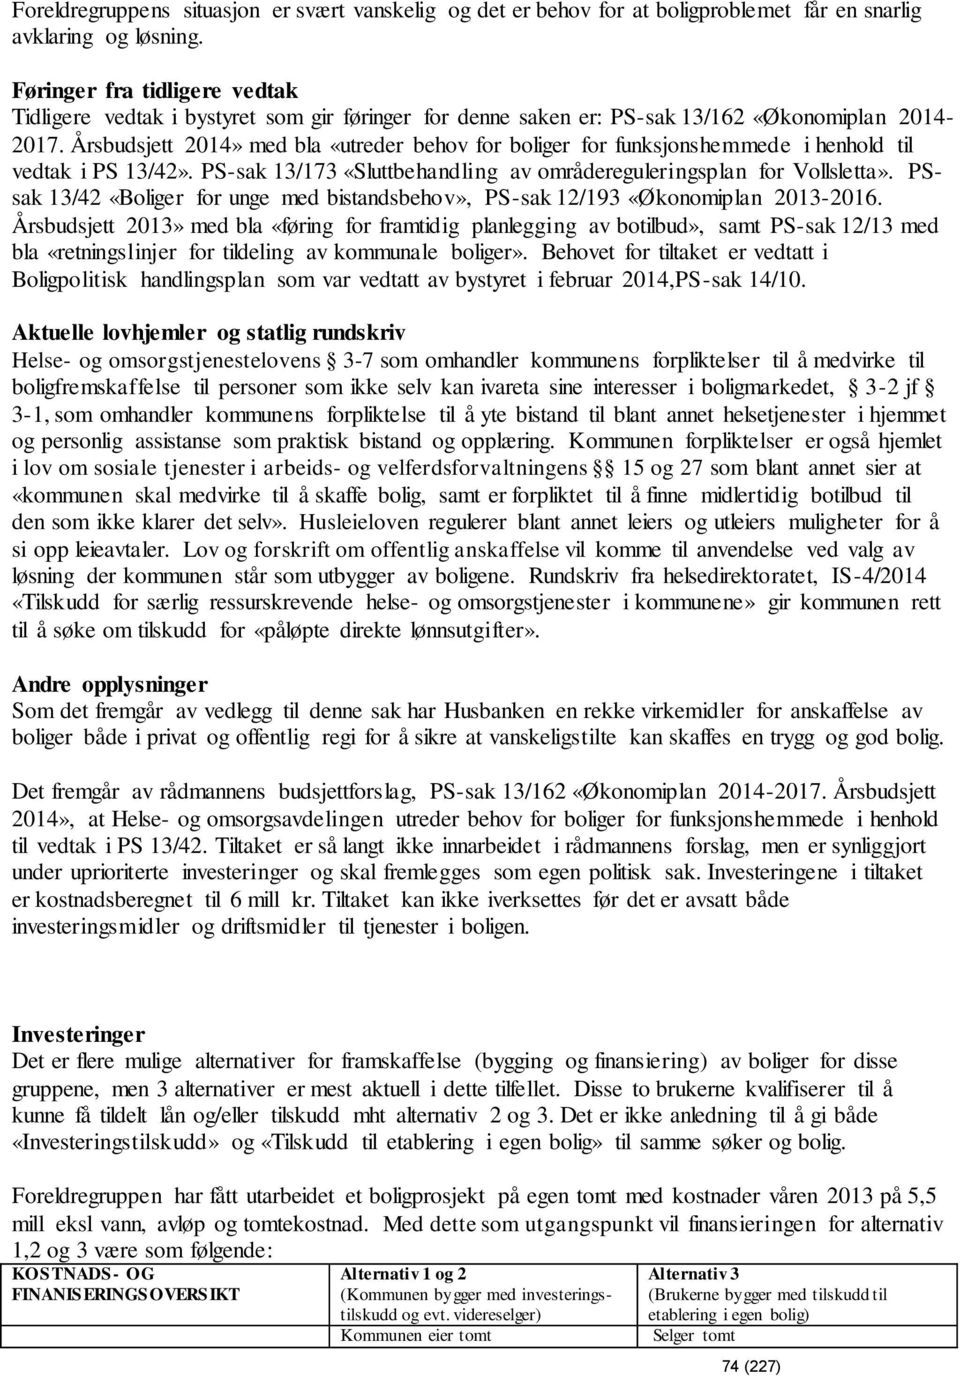 Årsbudsjett 2014» med bla «utreder behov for boliger for funksjonshemmede i henhold til vedtak i PS 13/42». PS-sak 13/173 «Sluttbehandling av områdereguleringsplan for Vollsletta».